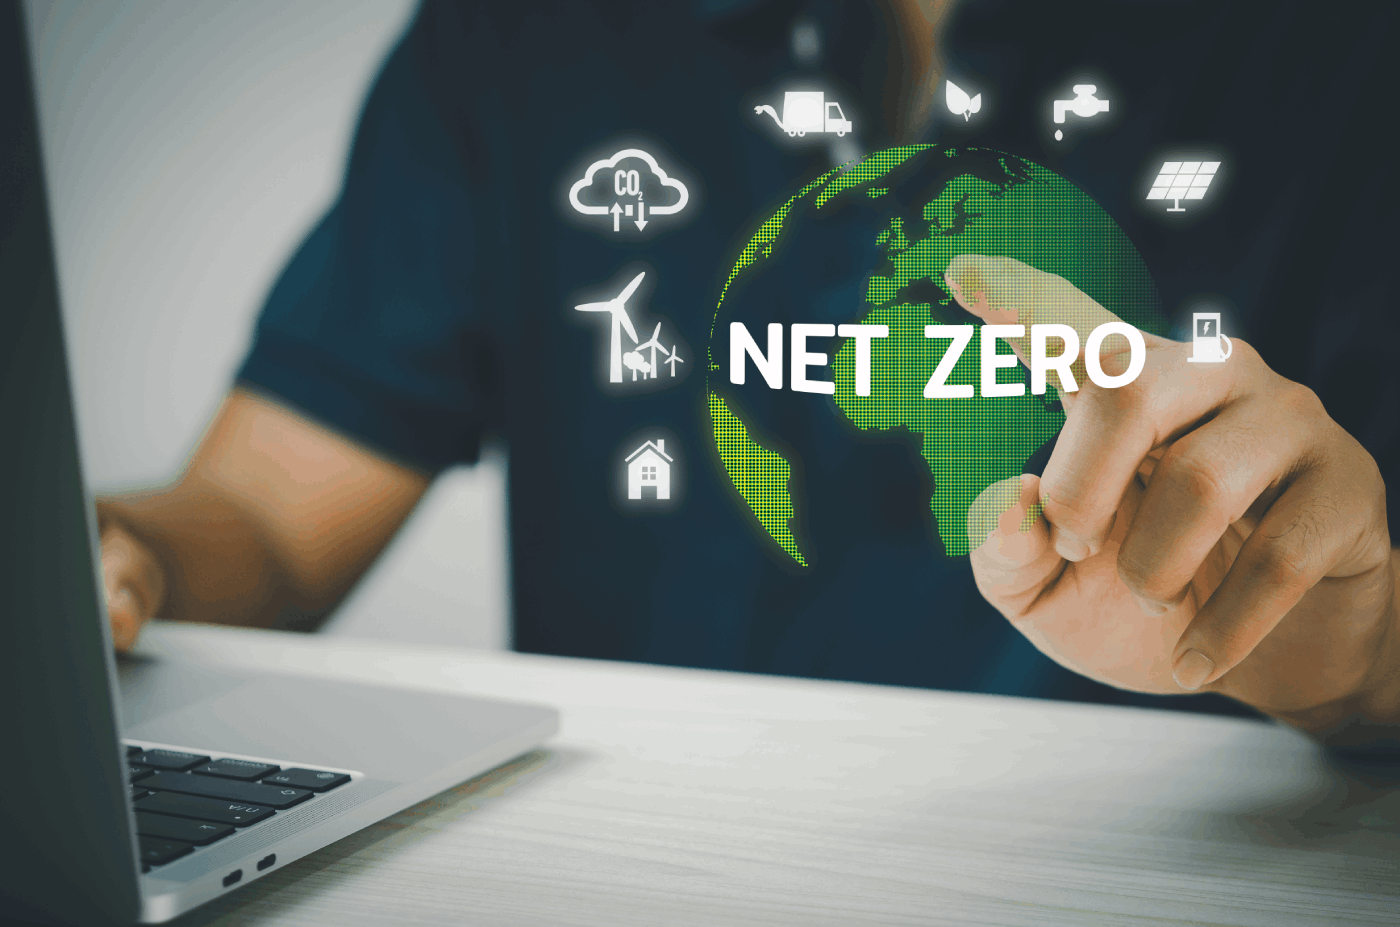 What is NetZero?